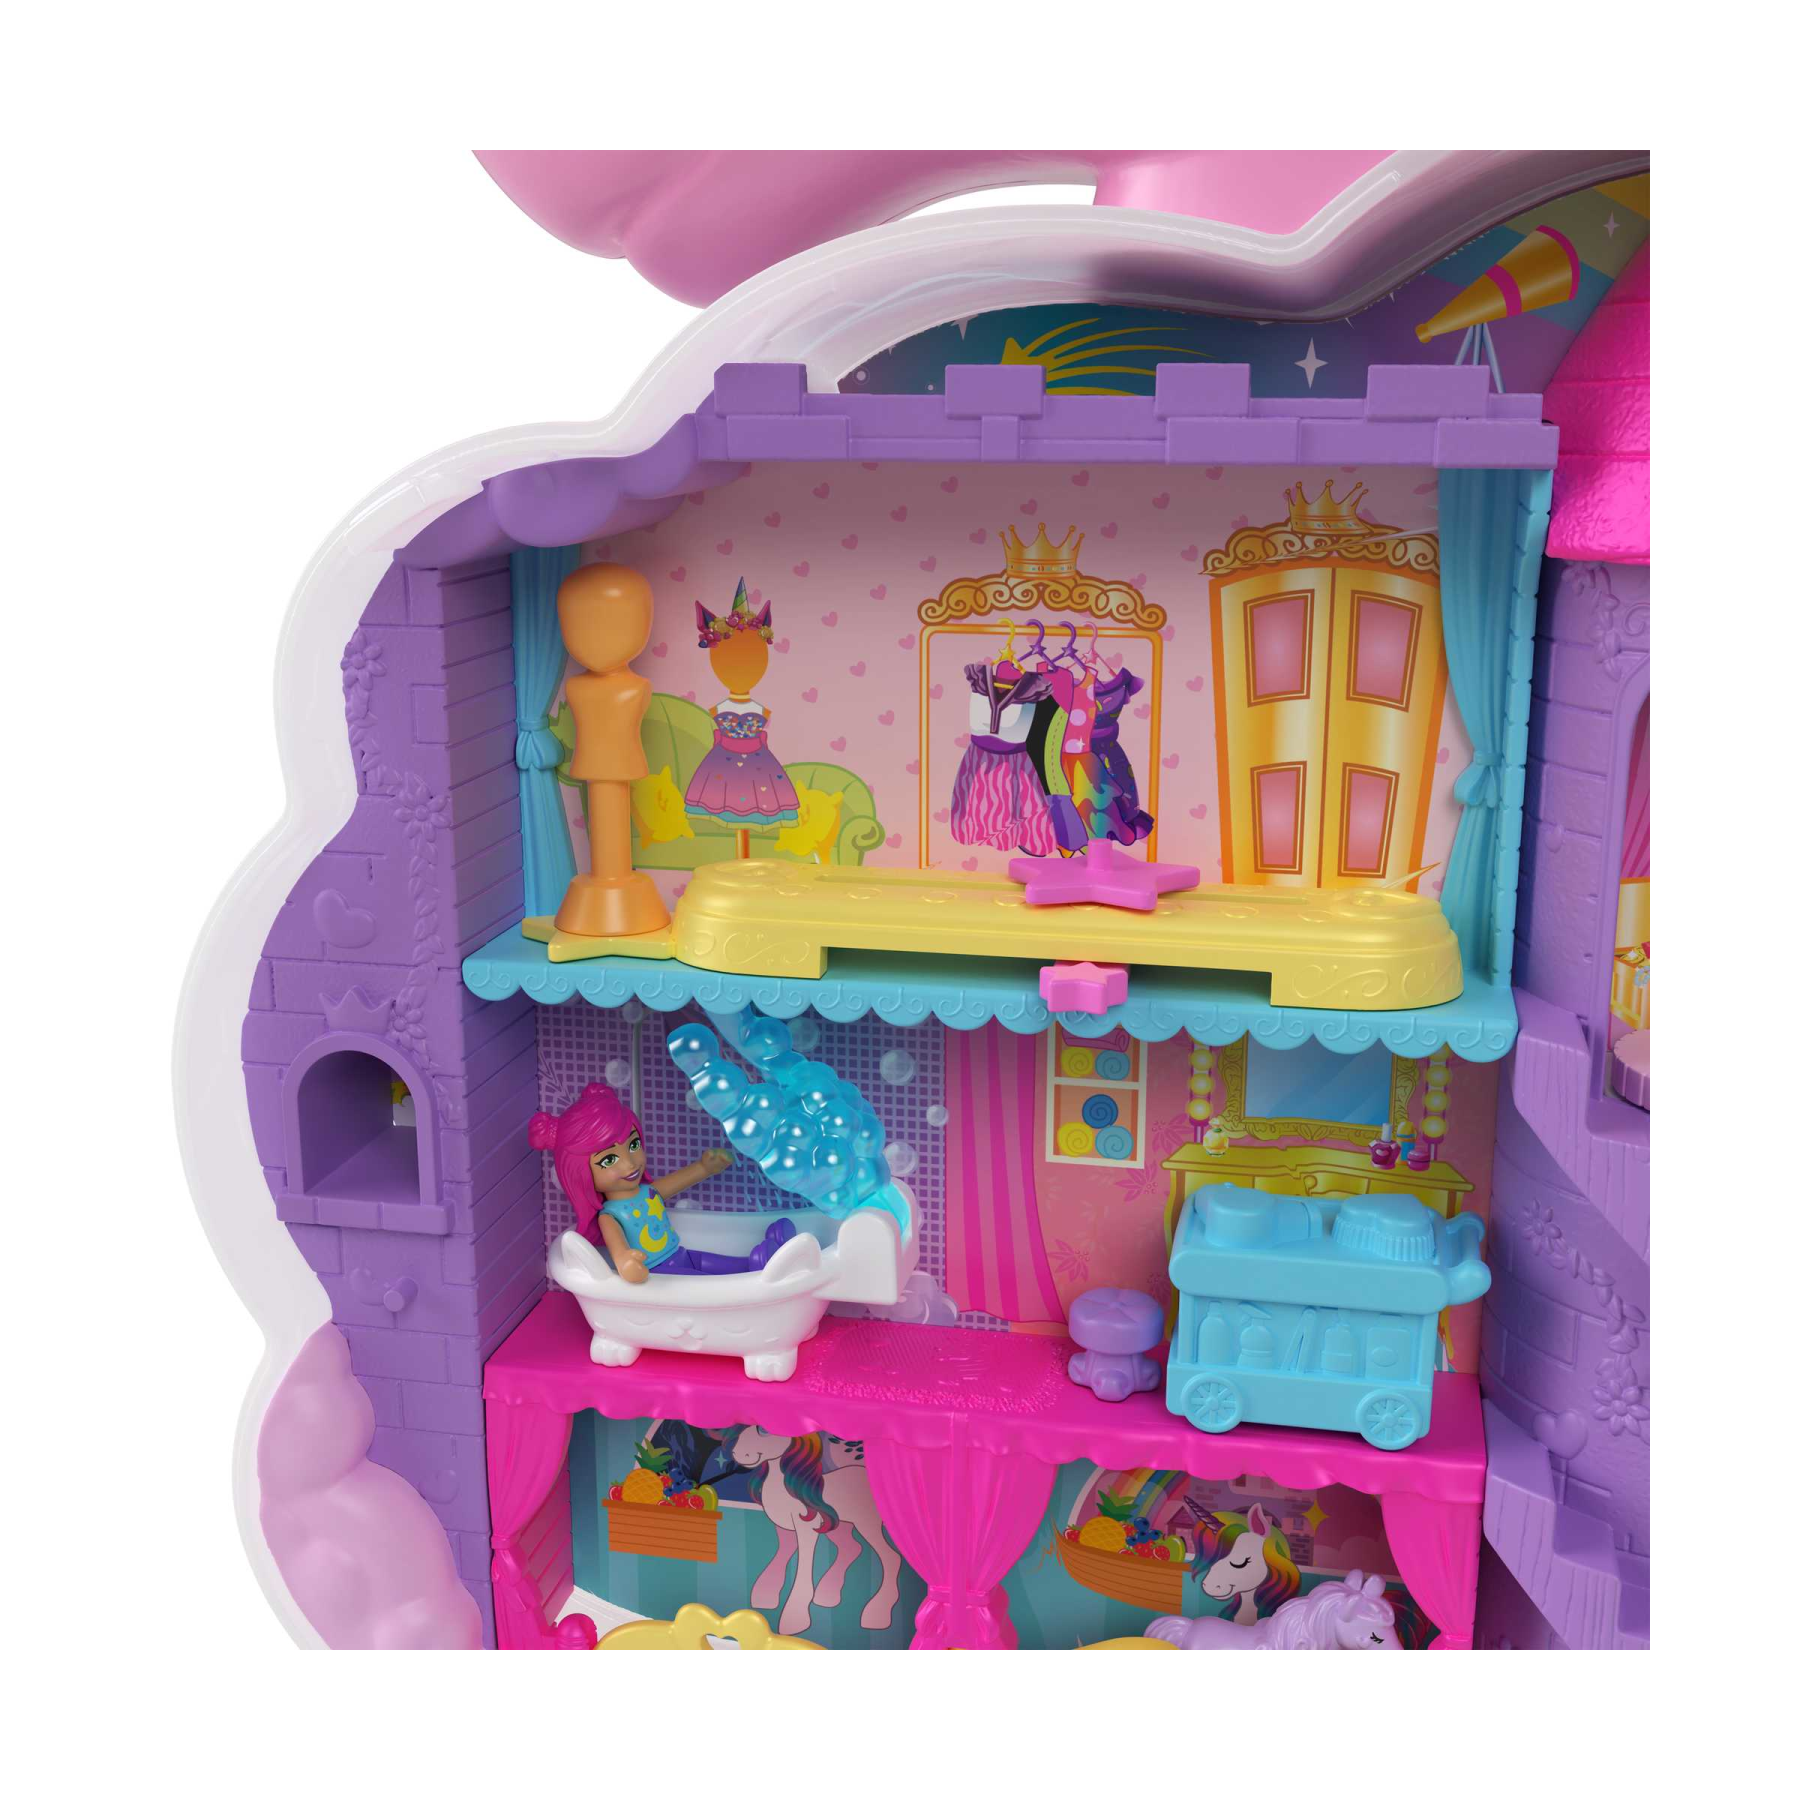 Polly pocket - salone di bellezza unicorno arcobaleno, playset con unicorno arcobaleno dalla testa pettinabile, 2 micro bambole e 20+ accessori, giocattolo per bambini, 4+ anni, hkv51 - Polly Pocket